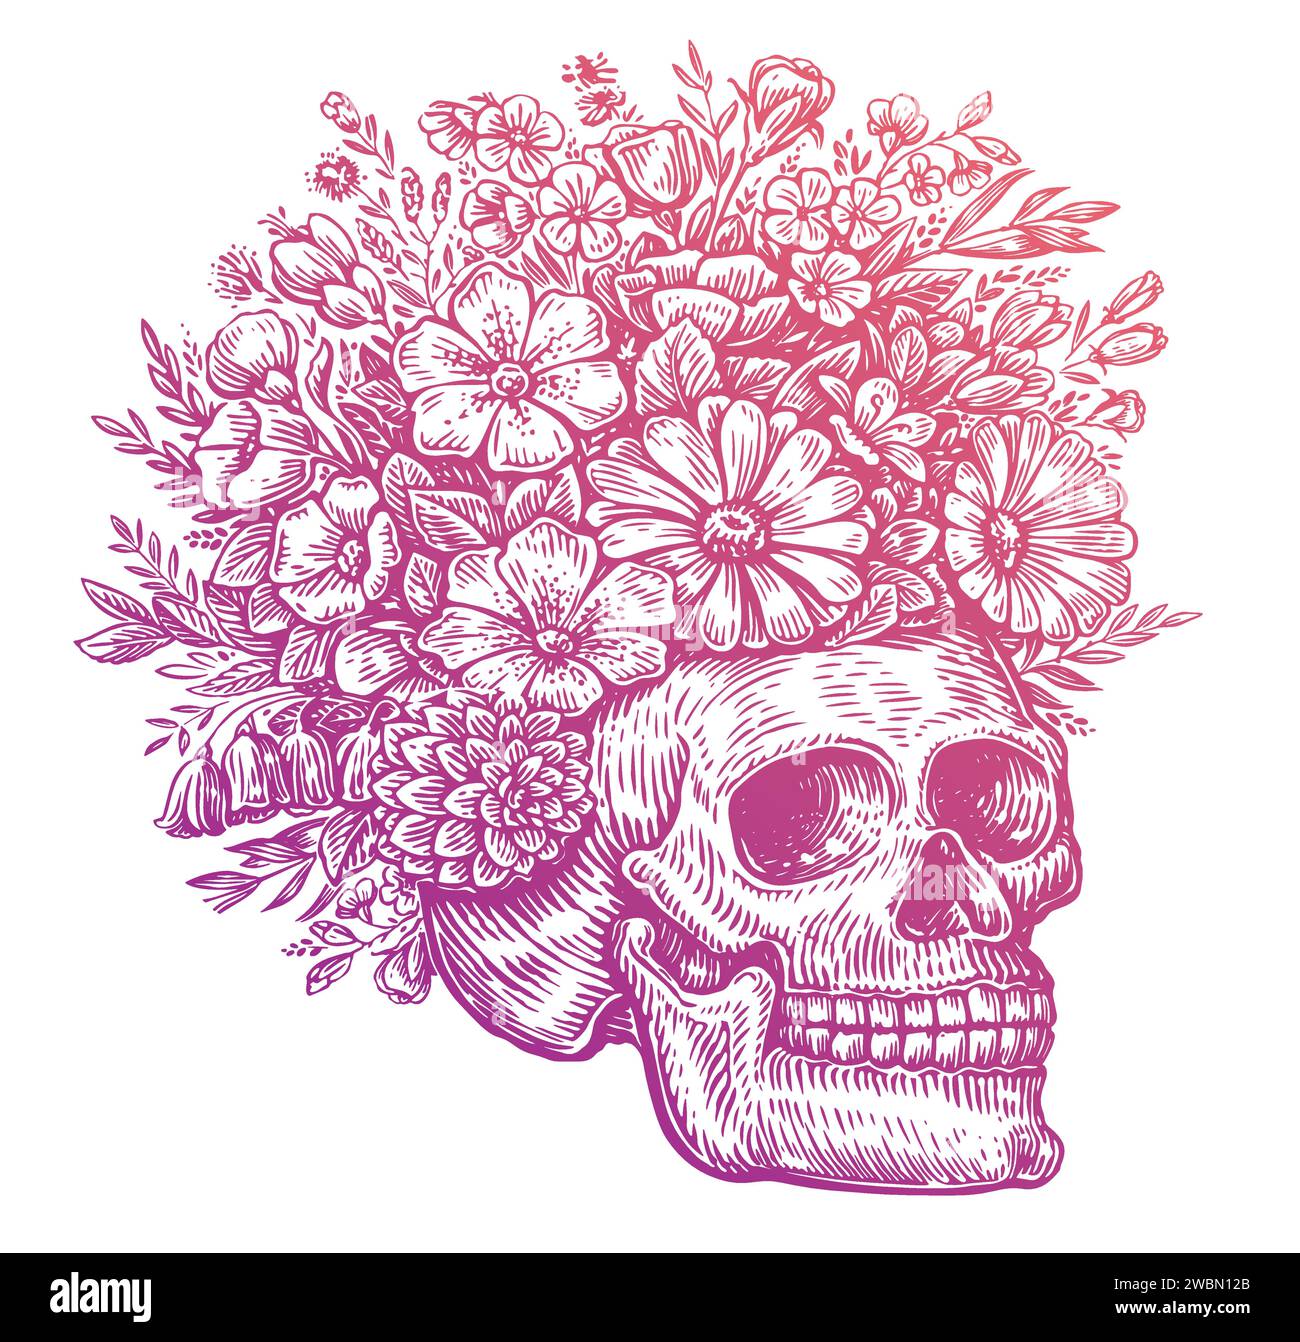 Crâne humain avec des fleurs. Illustration vectorielle dessinée à la main Illustration de Vecteur